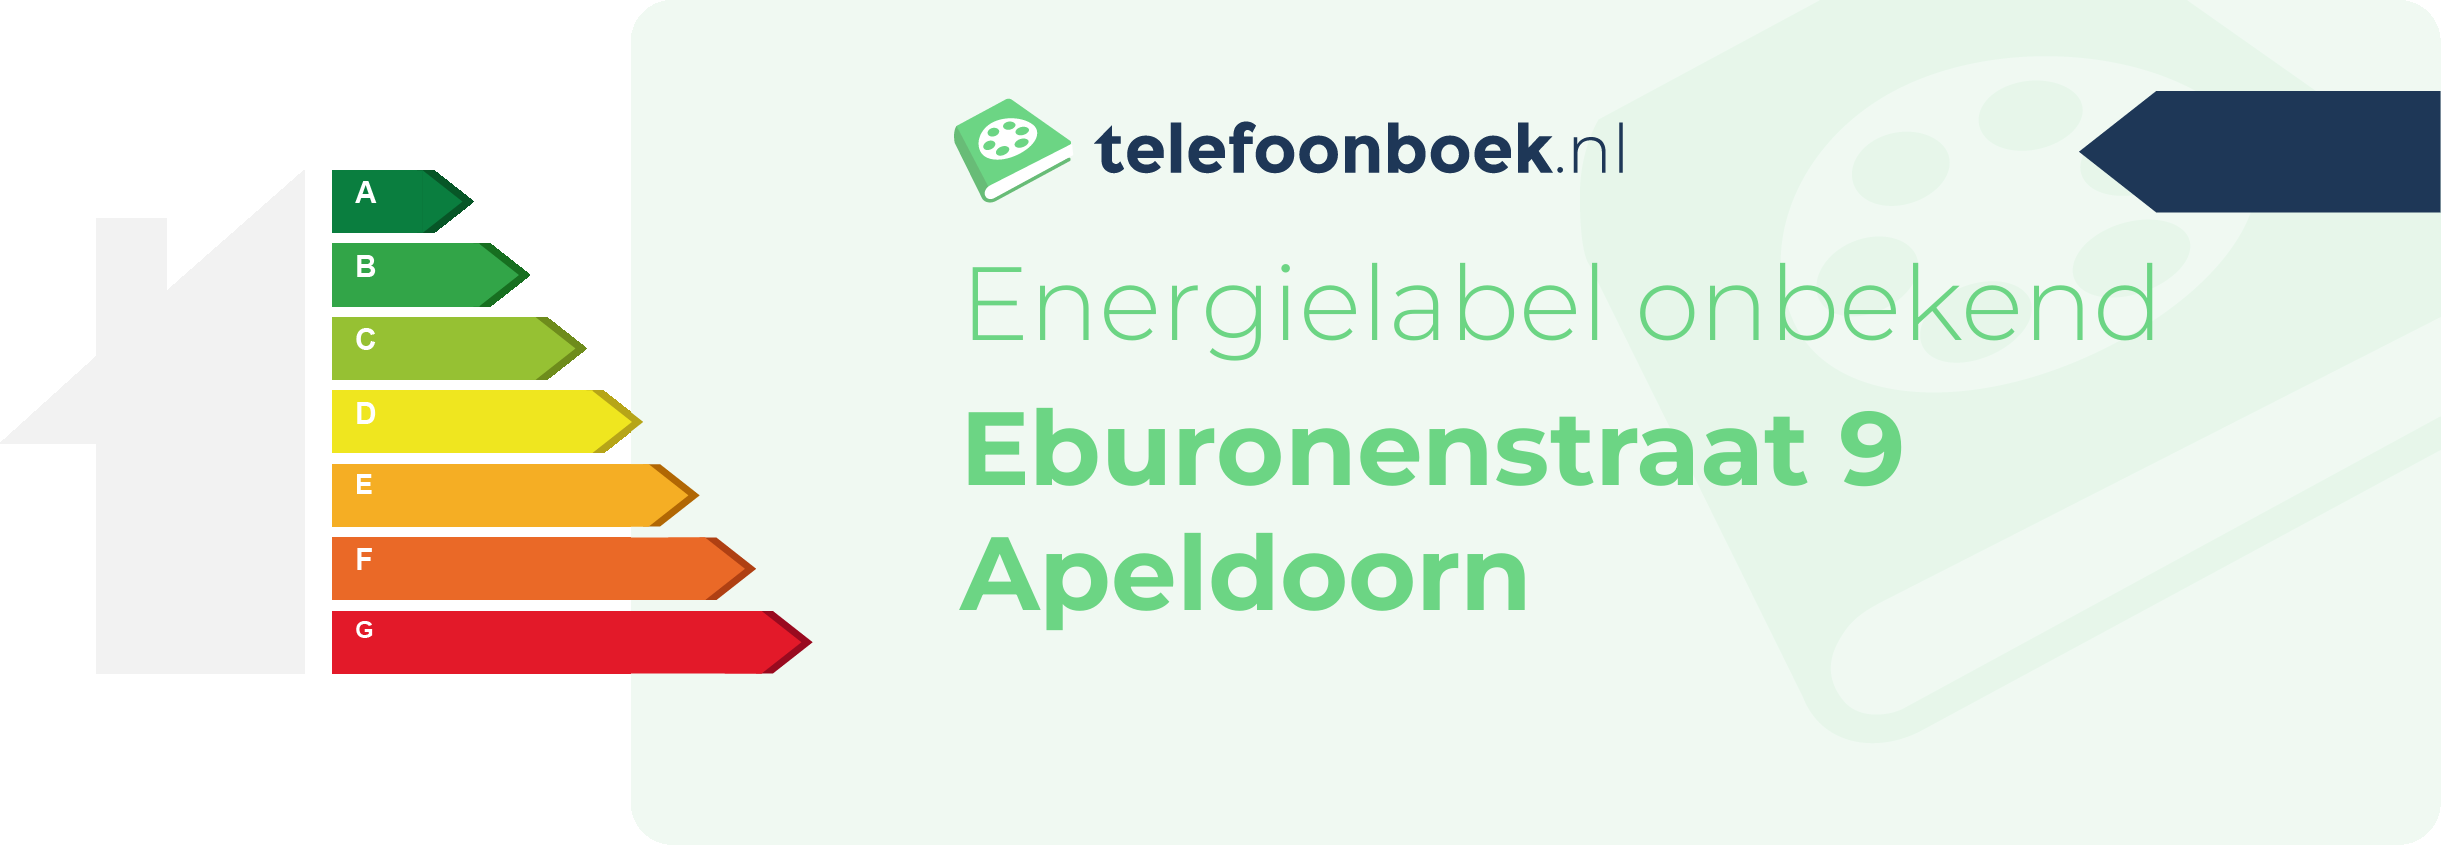 Energielabel Eburonenstraat 9 Apeldoorn